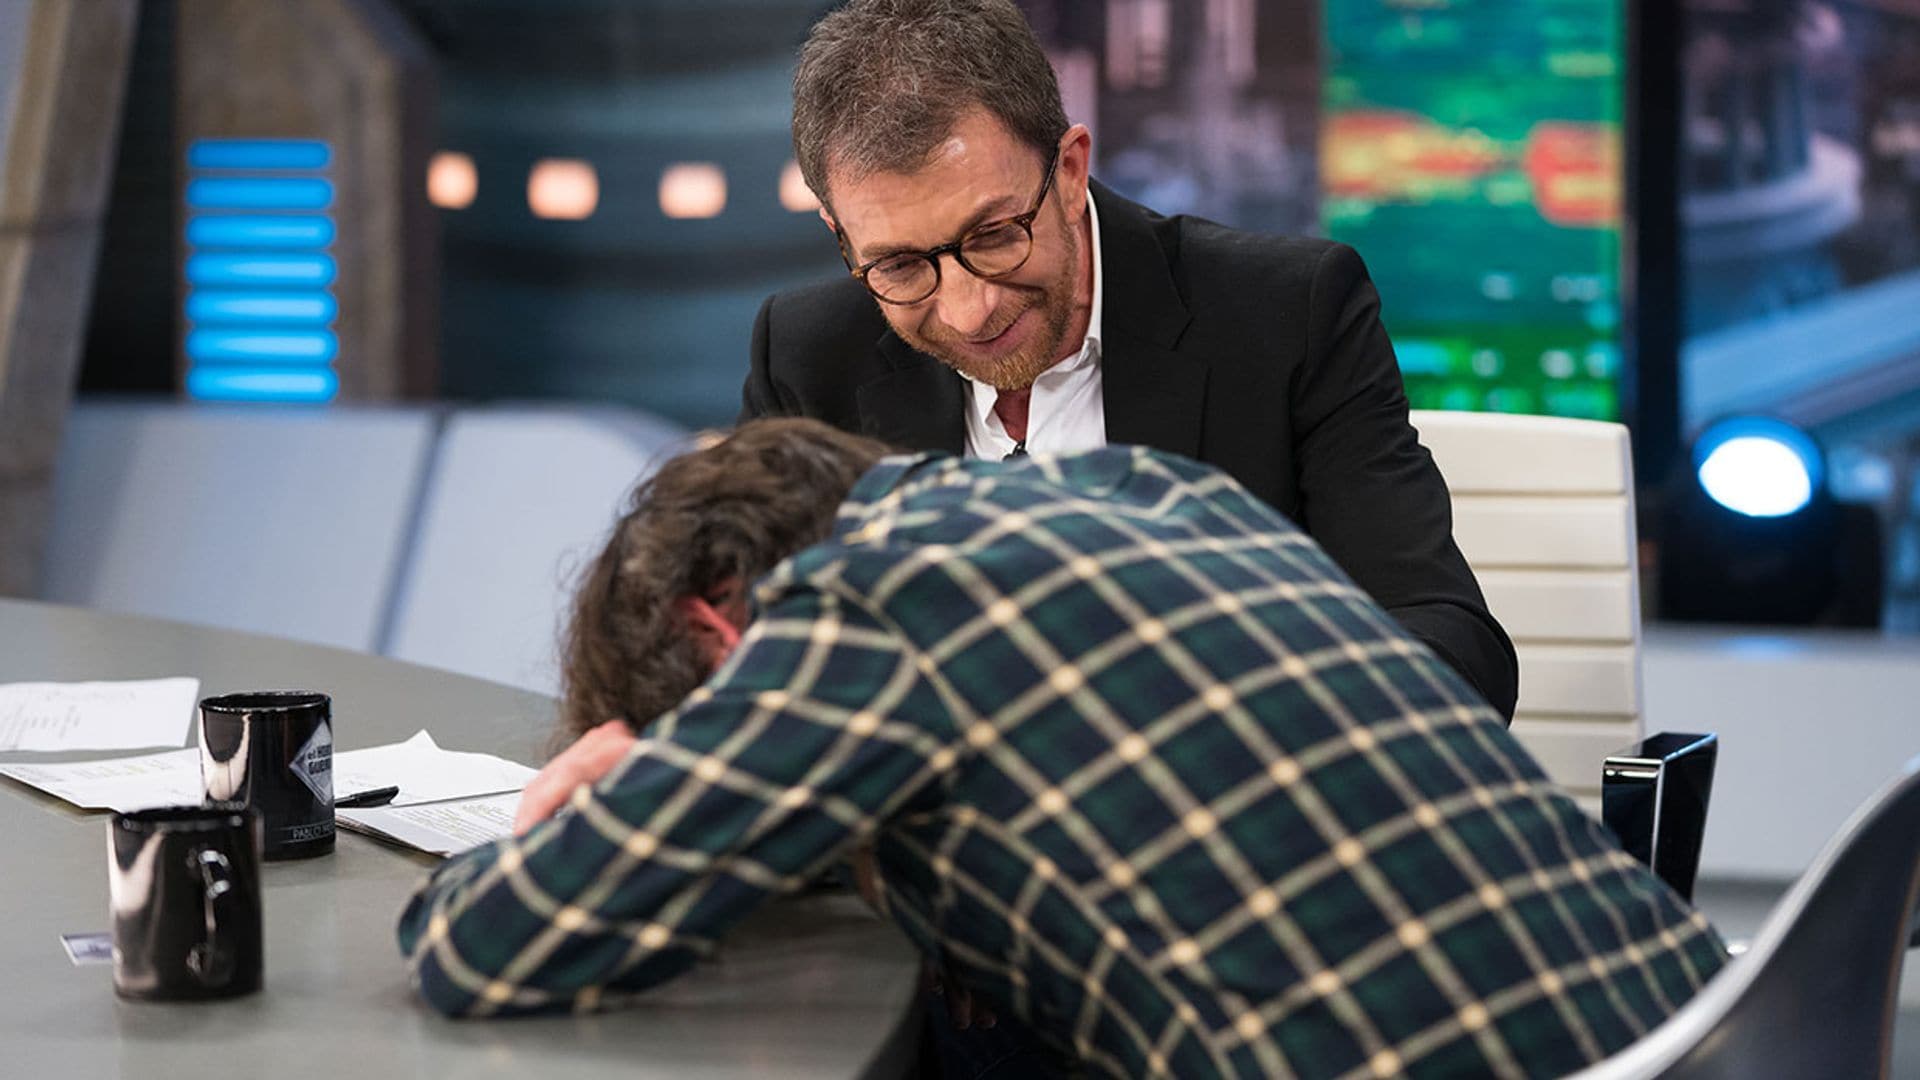 ¡Menudo susto! El periodista Jordi Évole sufre un ataque de cataplexia en directo